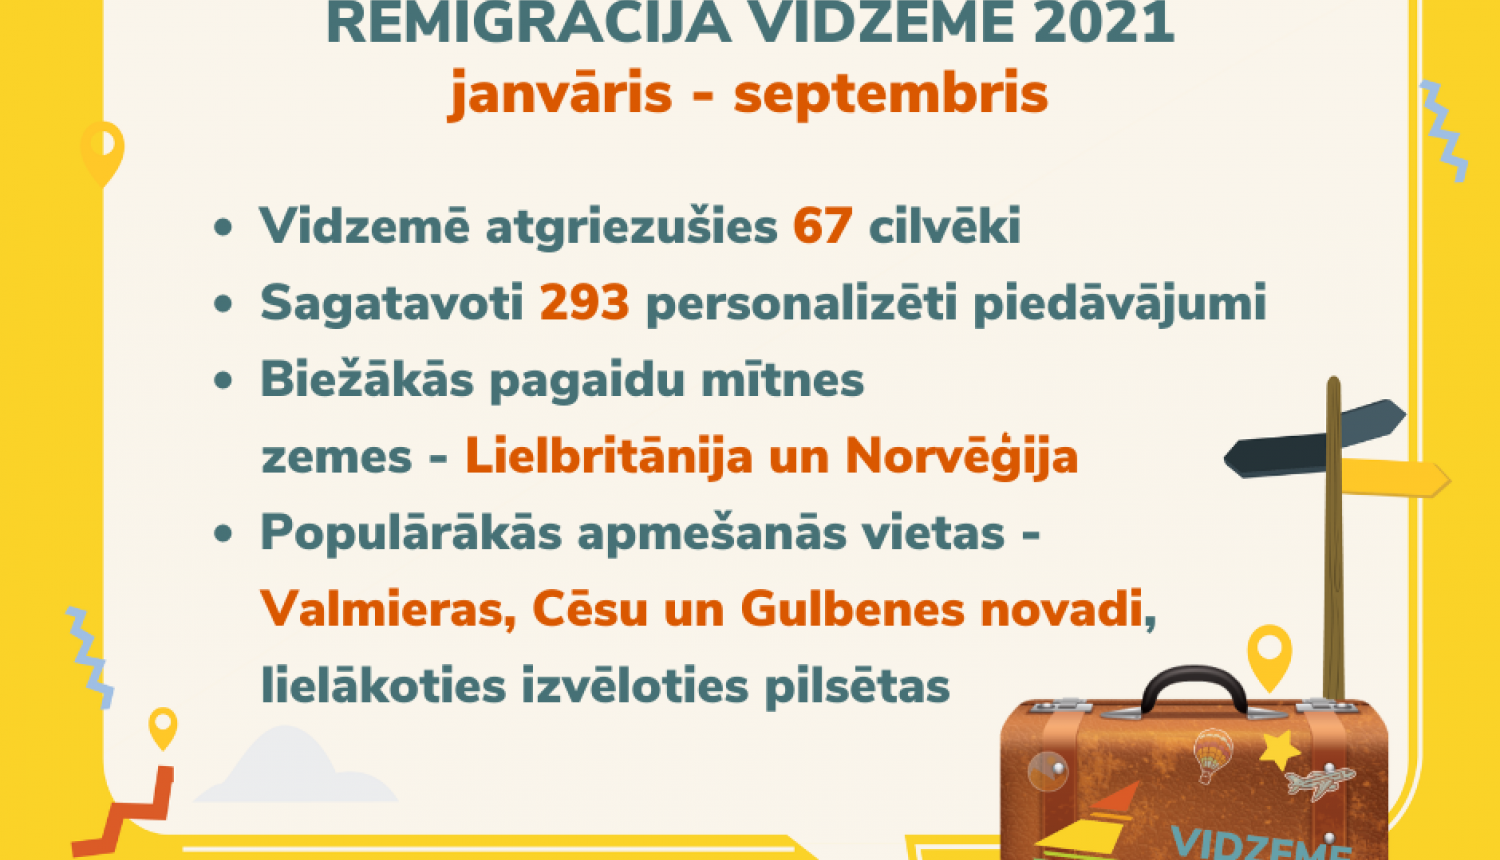 Pastāvīgai dzīvei Latvijā atgriežas 67 vidzemnieki